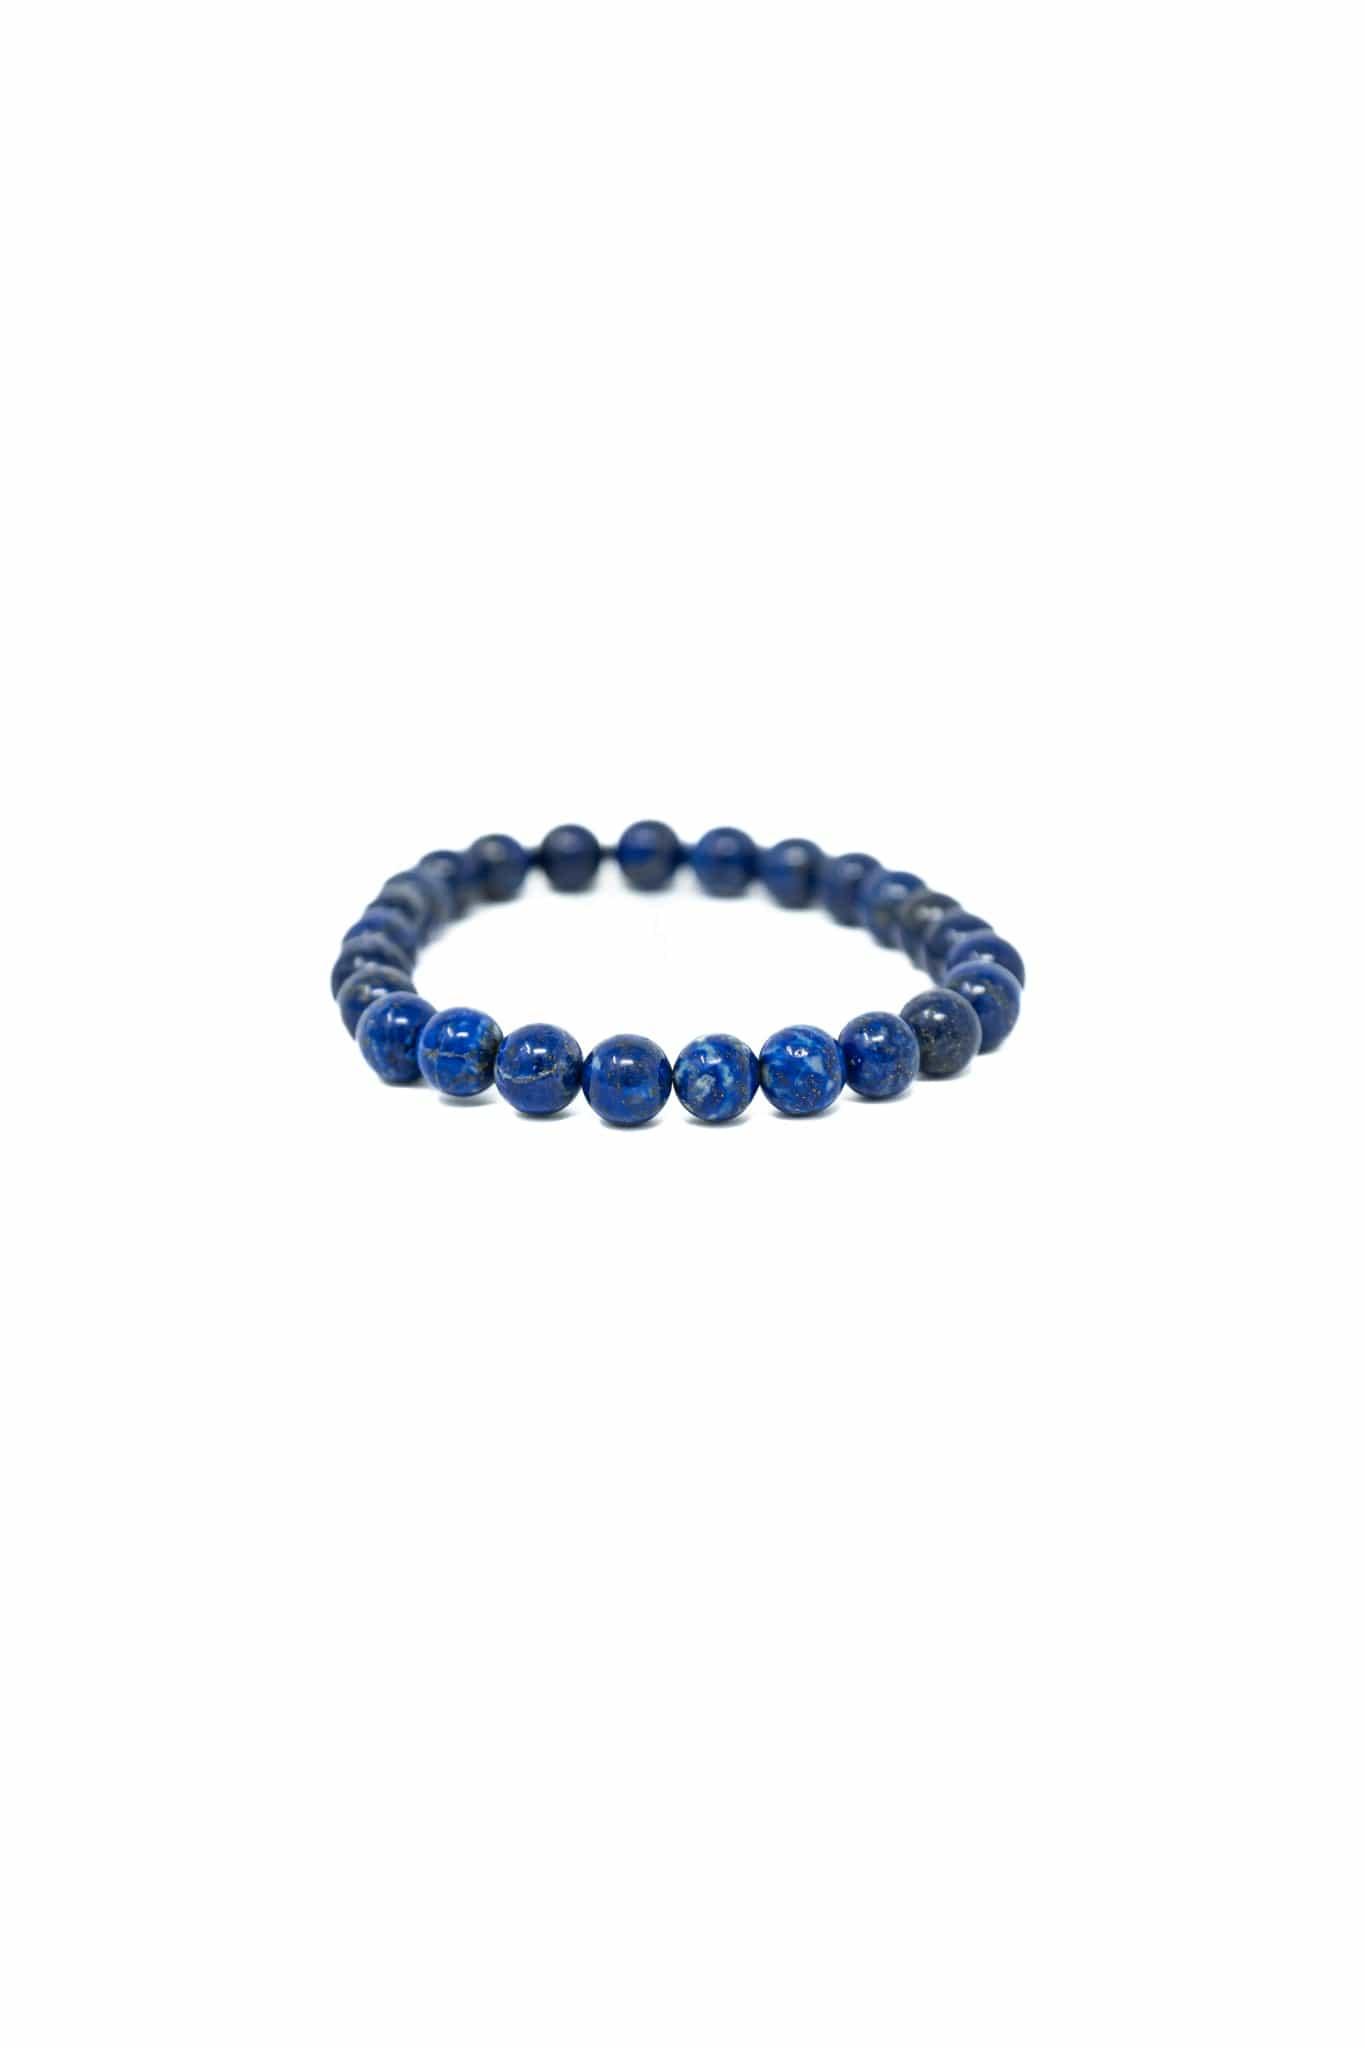 Lapis Lazuli Bracelet 8mm Bracelets